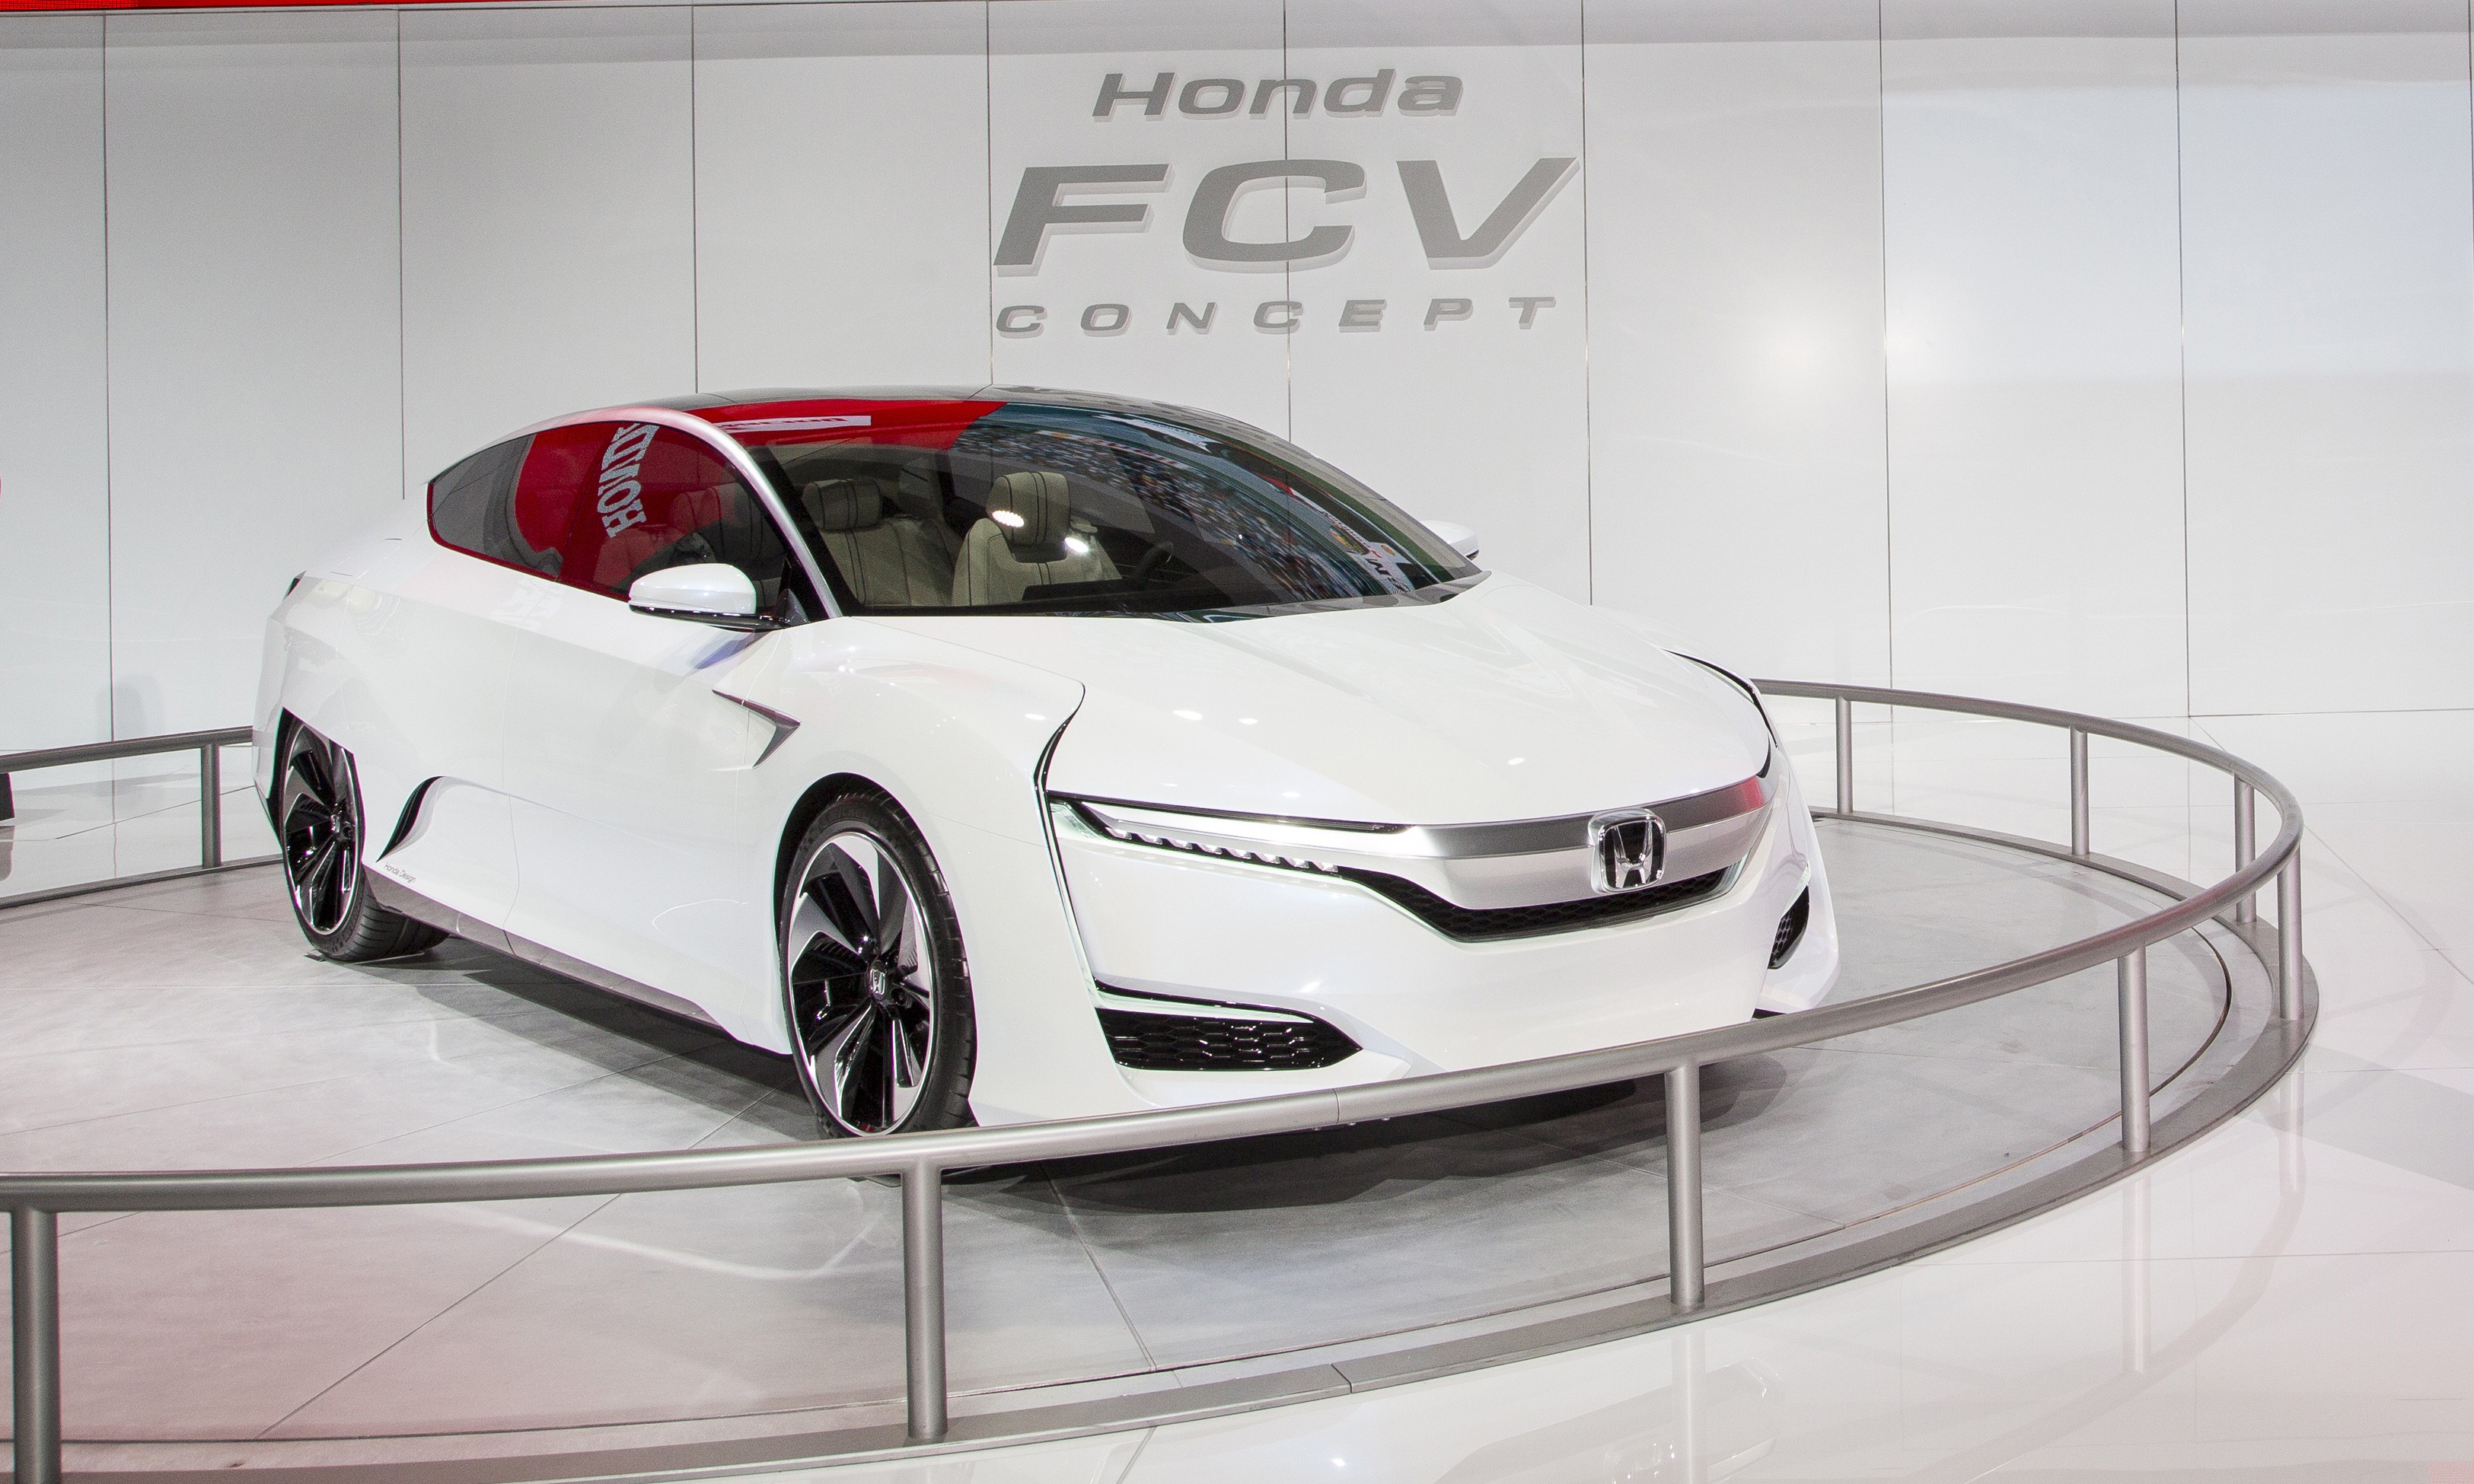 Honda Press Conference at 2015 NAIAS